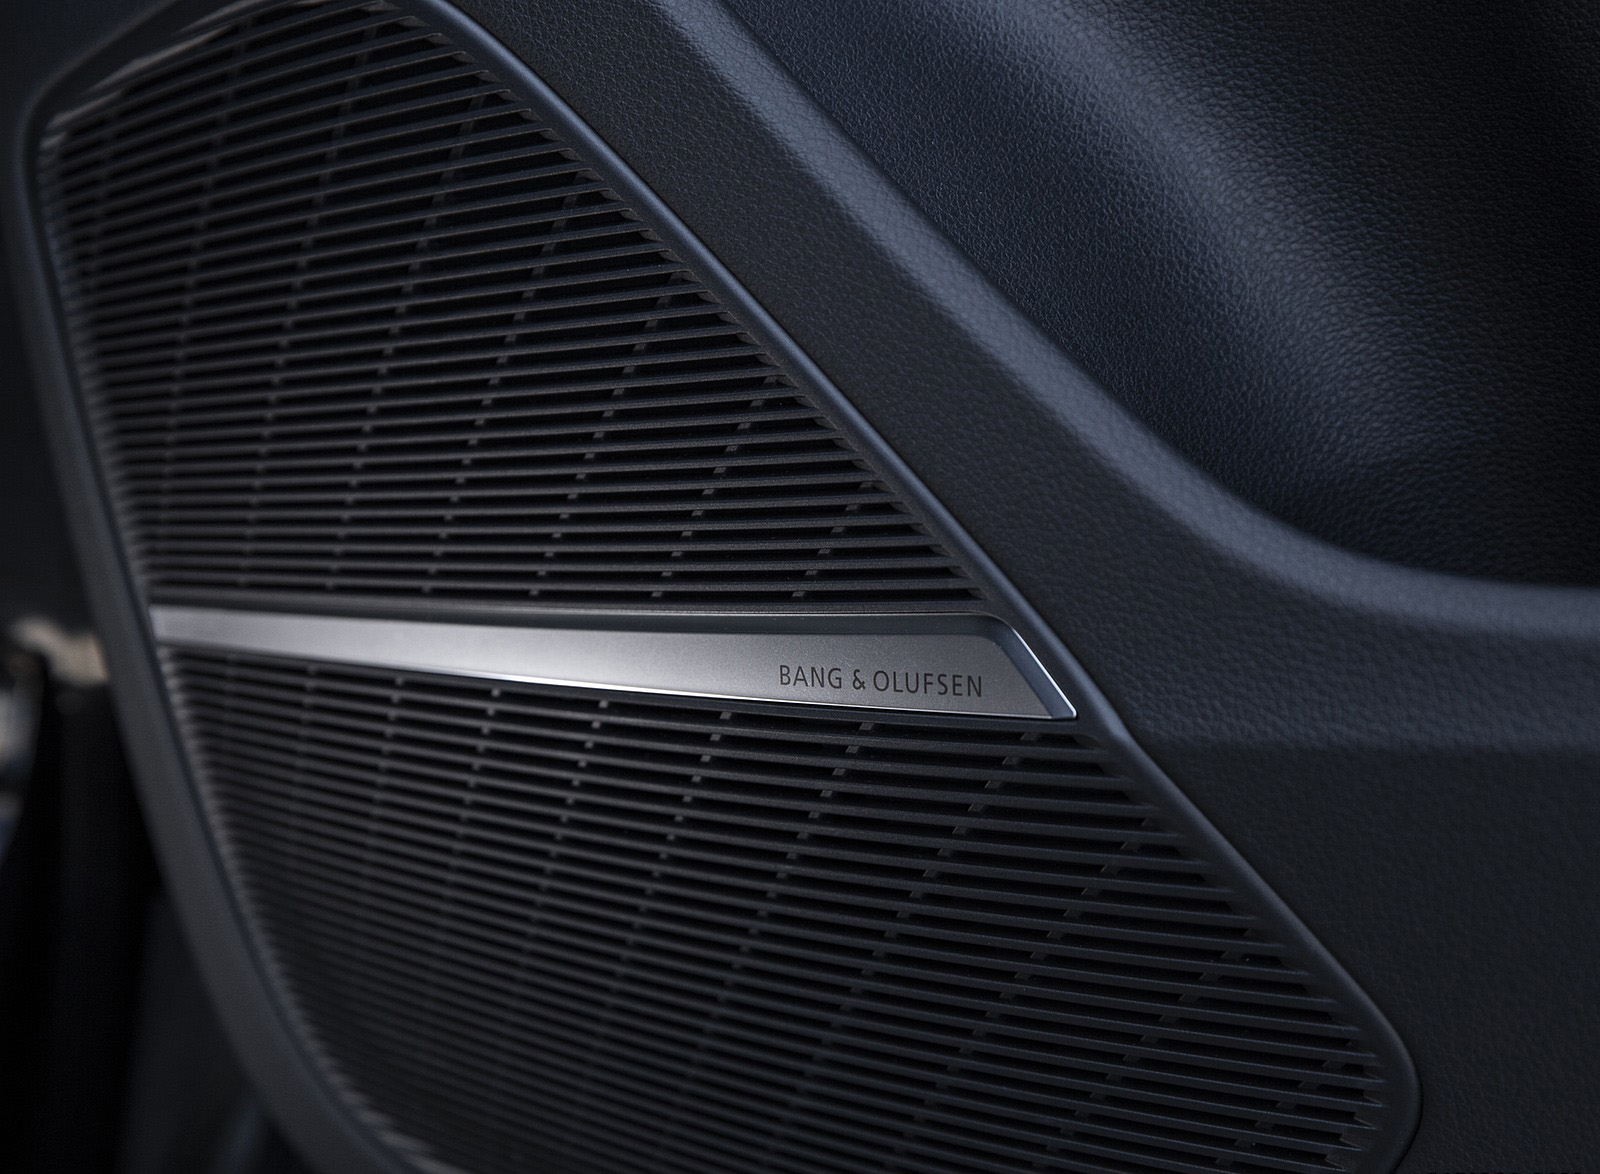 2020 Audi SQ8 TDI quattro (UK-Spec) Interior Detail Wallpapers #131 of 140